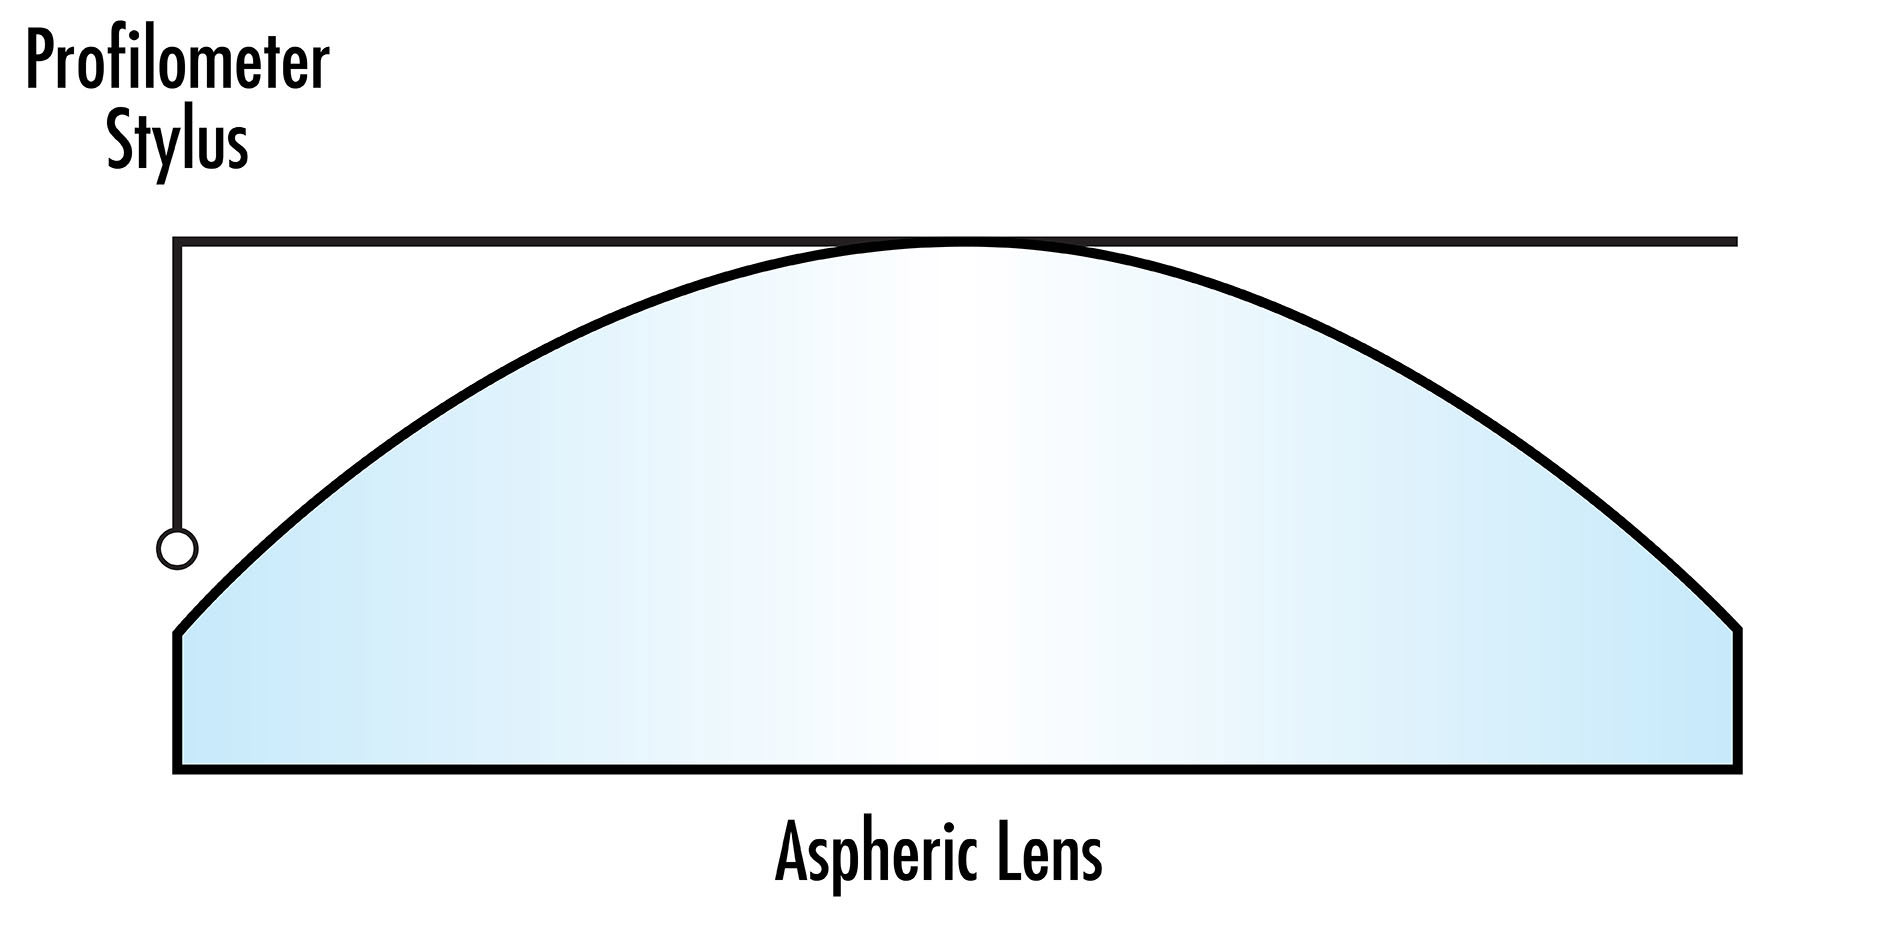 Le stylet d'un profilomètre tactile utilisé pour la métrologie des asphères peut limiter la hauteur sagittale qui peut être mesurée pour les grandes asphères.